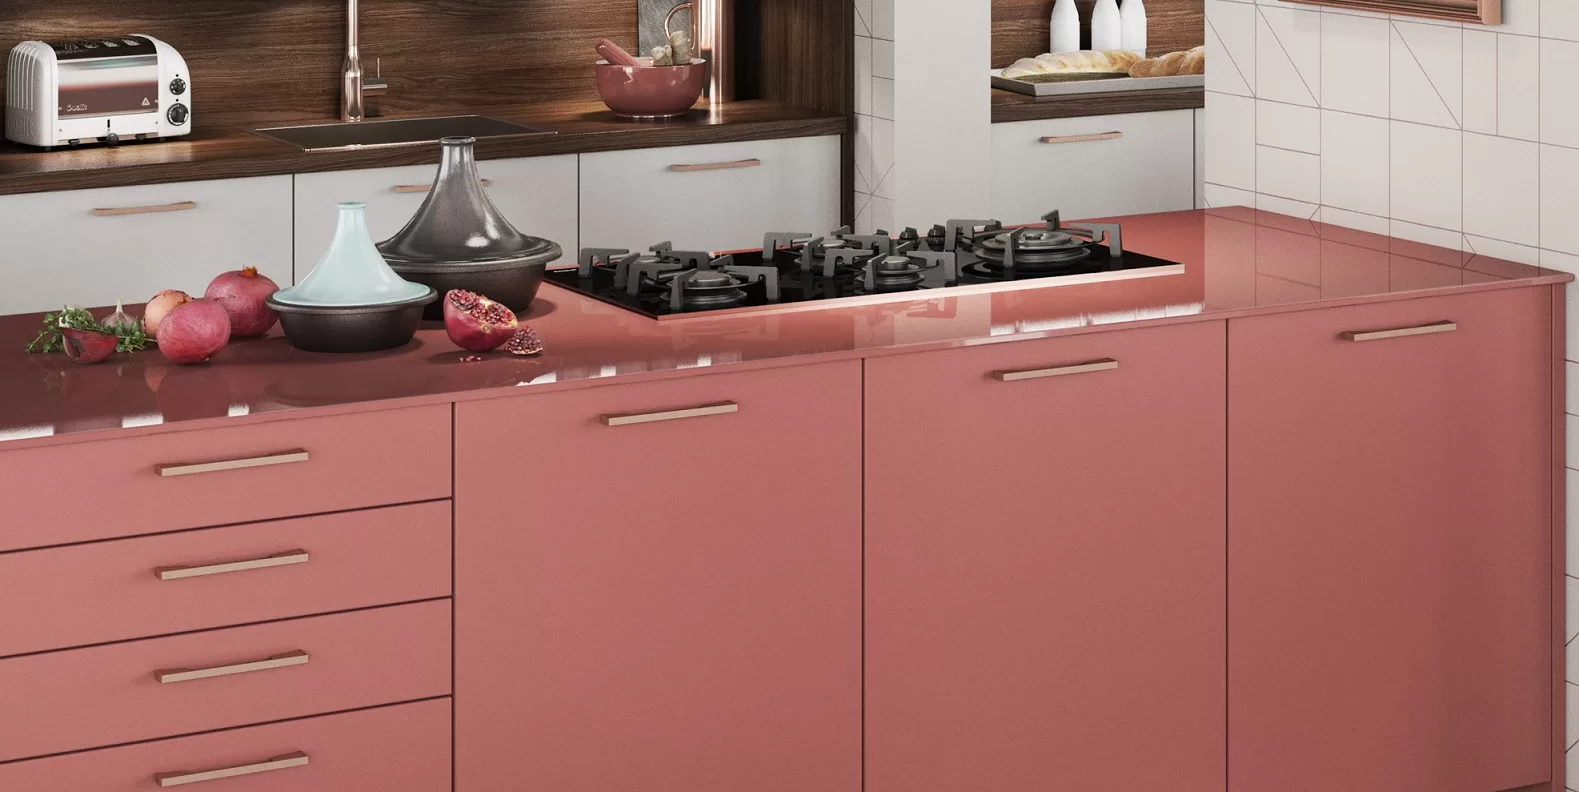 황동 손잡이와 분홍색 유리 조리대가 있는 연어 분홍색 현대식 주방